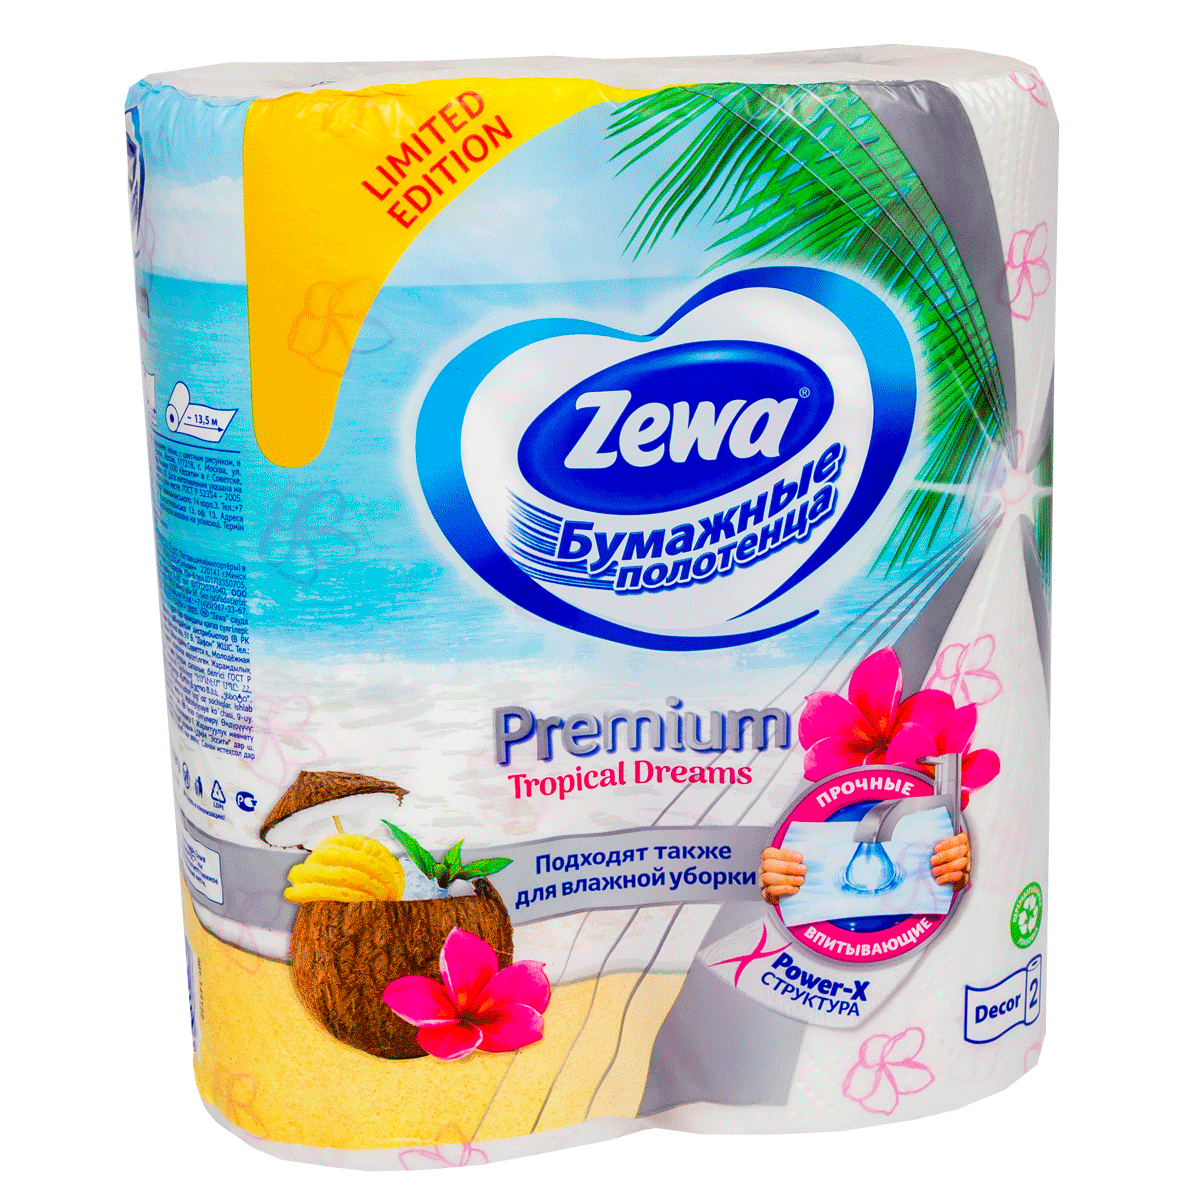 Խոհանոցային սրբիչ Zewa  Premium decor